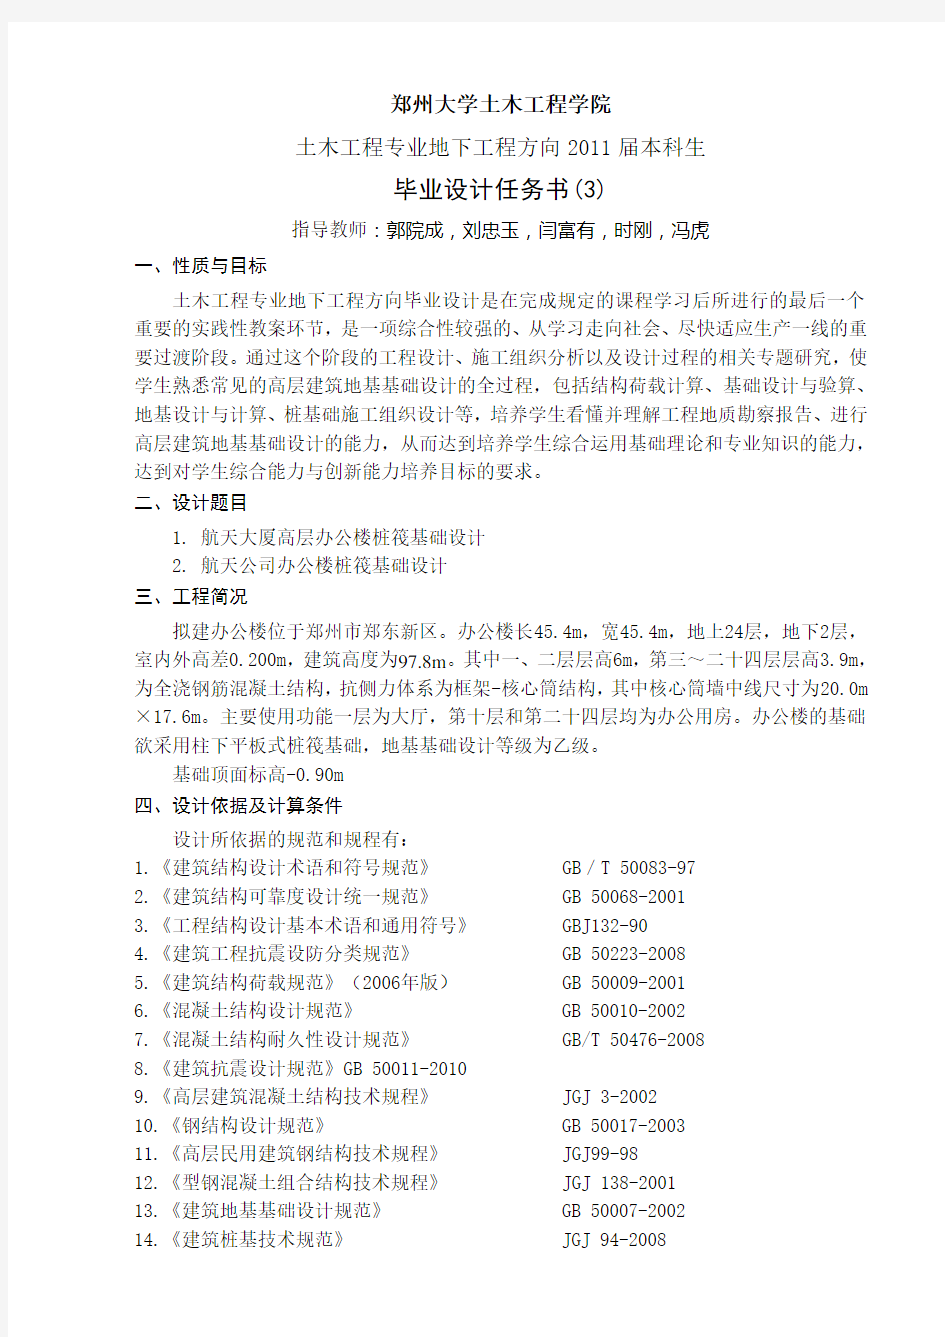 郑州大学土木工程学院毕业设计任务书